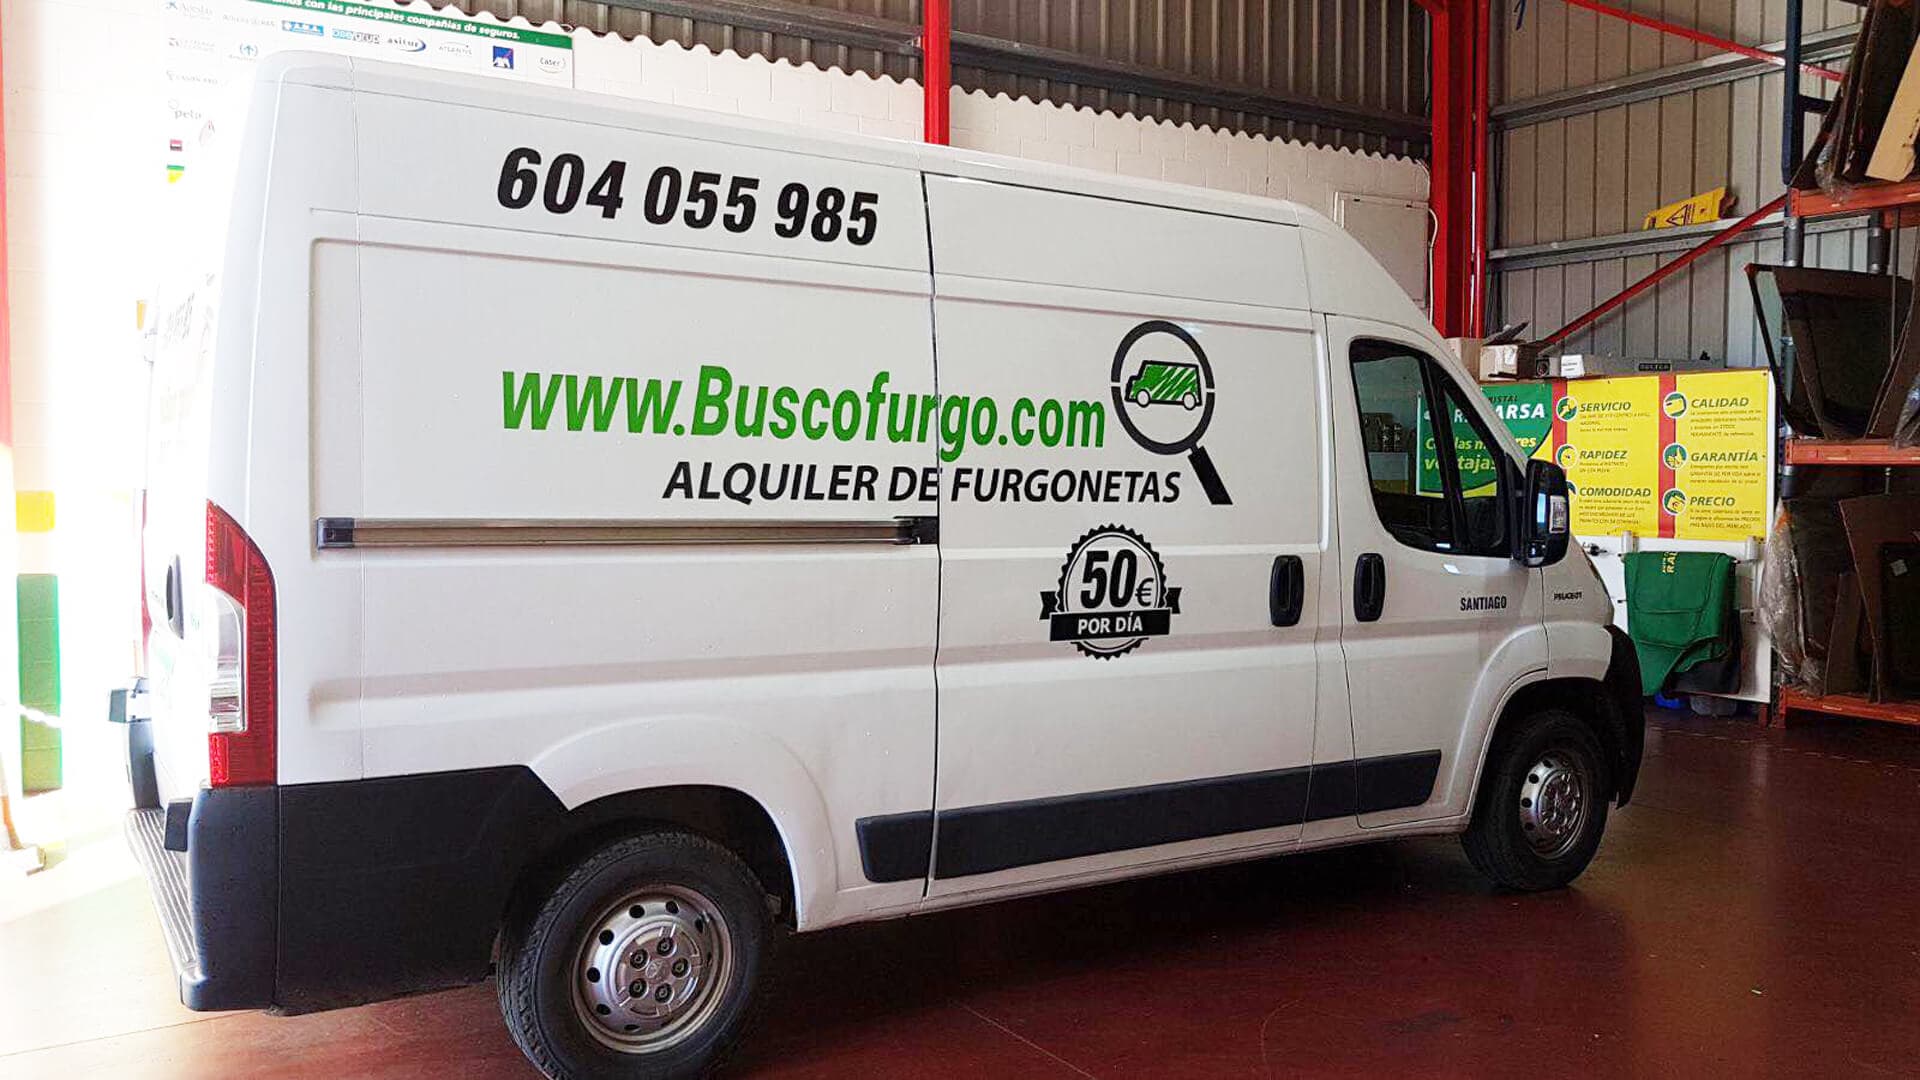 Alquiler de coches y fugonetas en Santiago - Busco Furgo